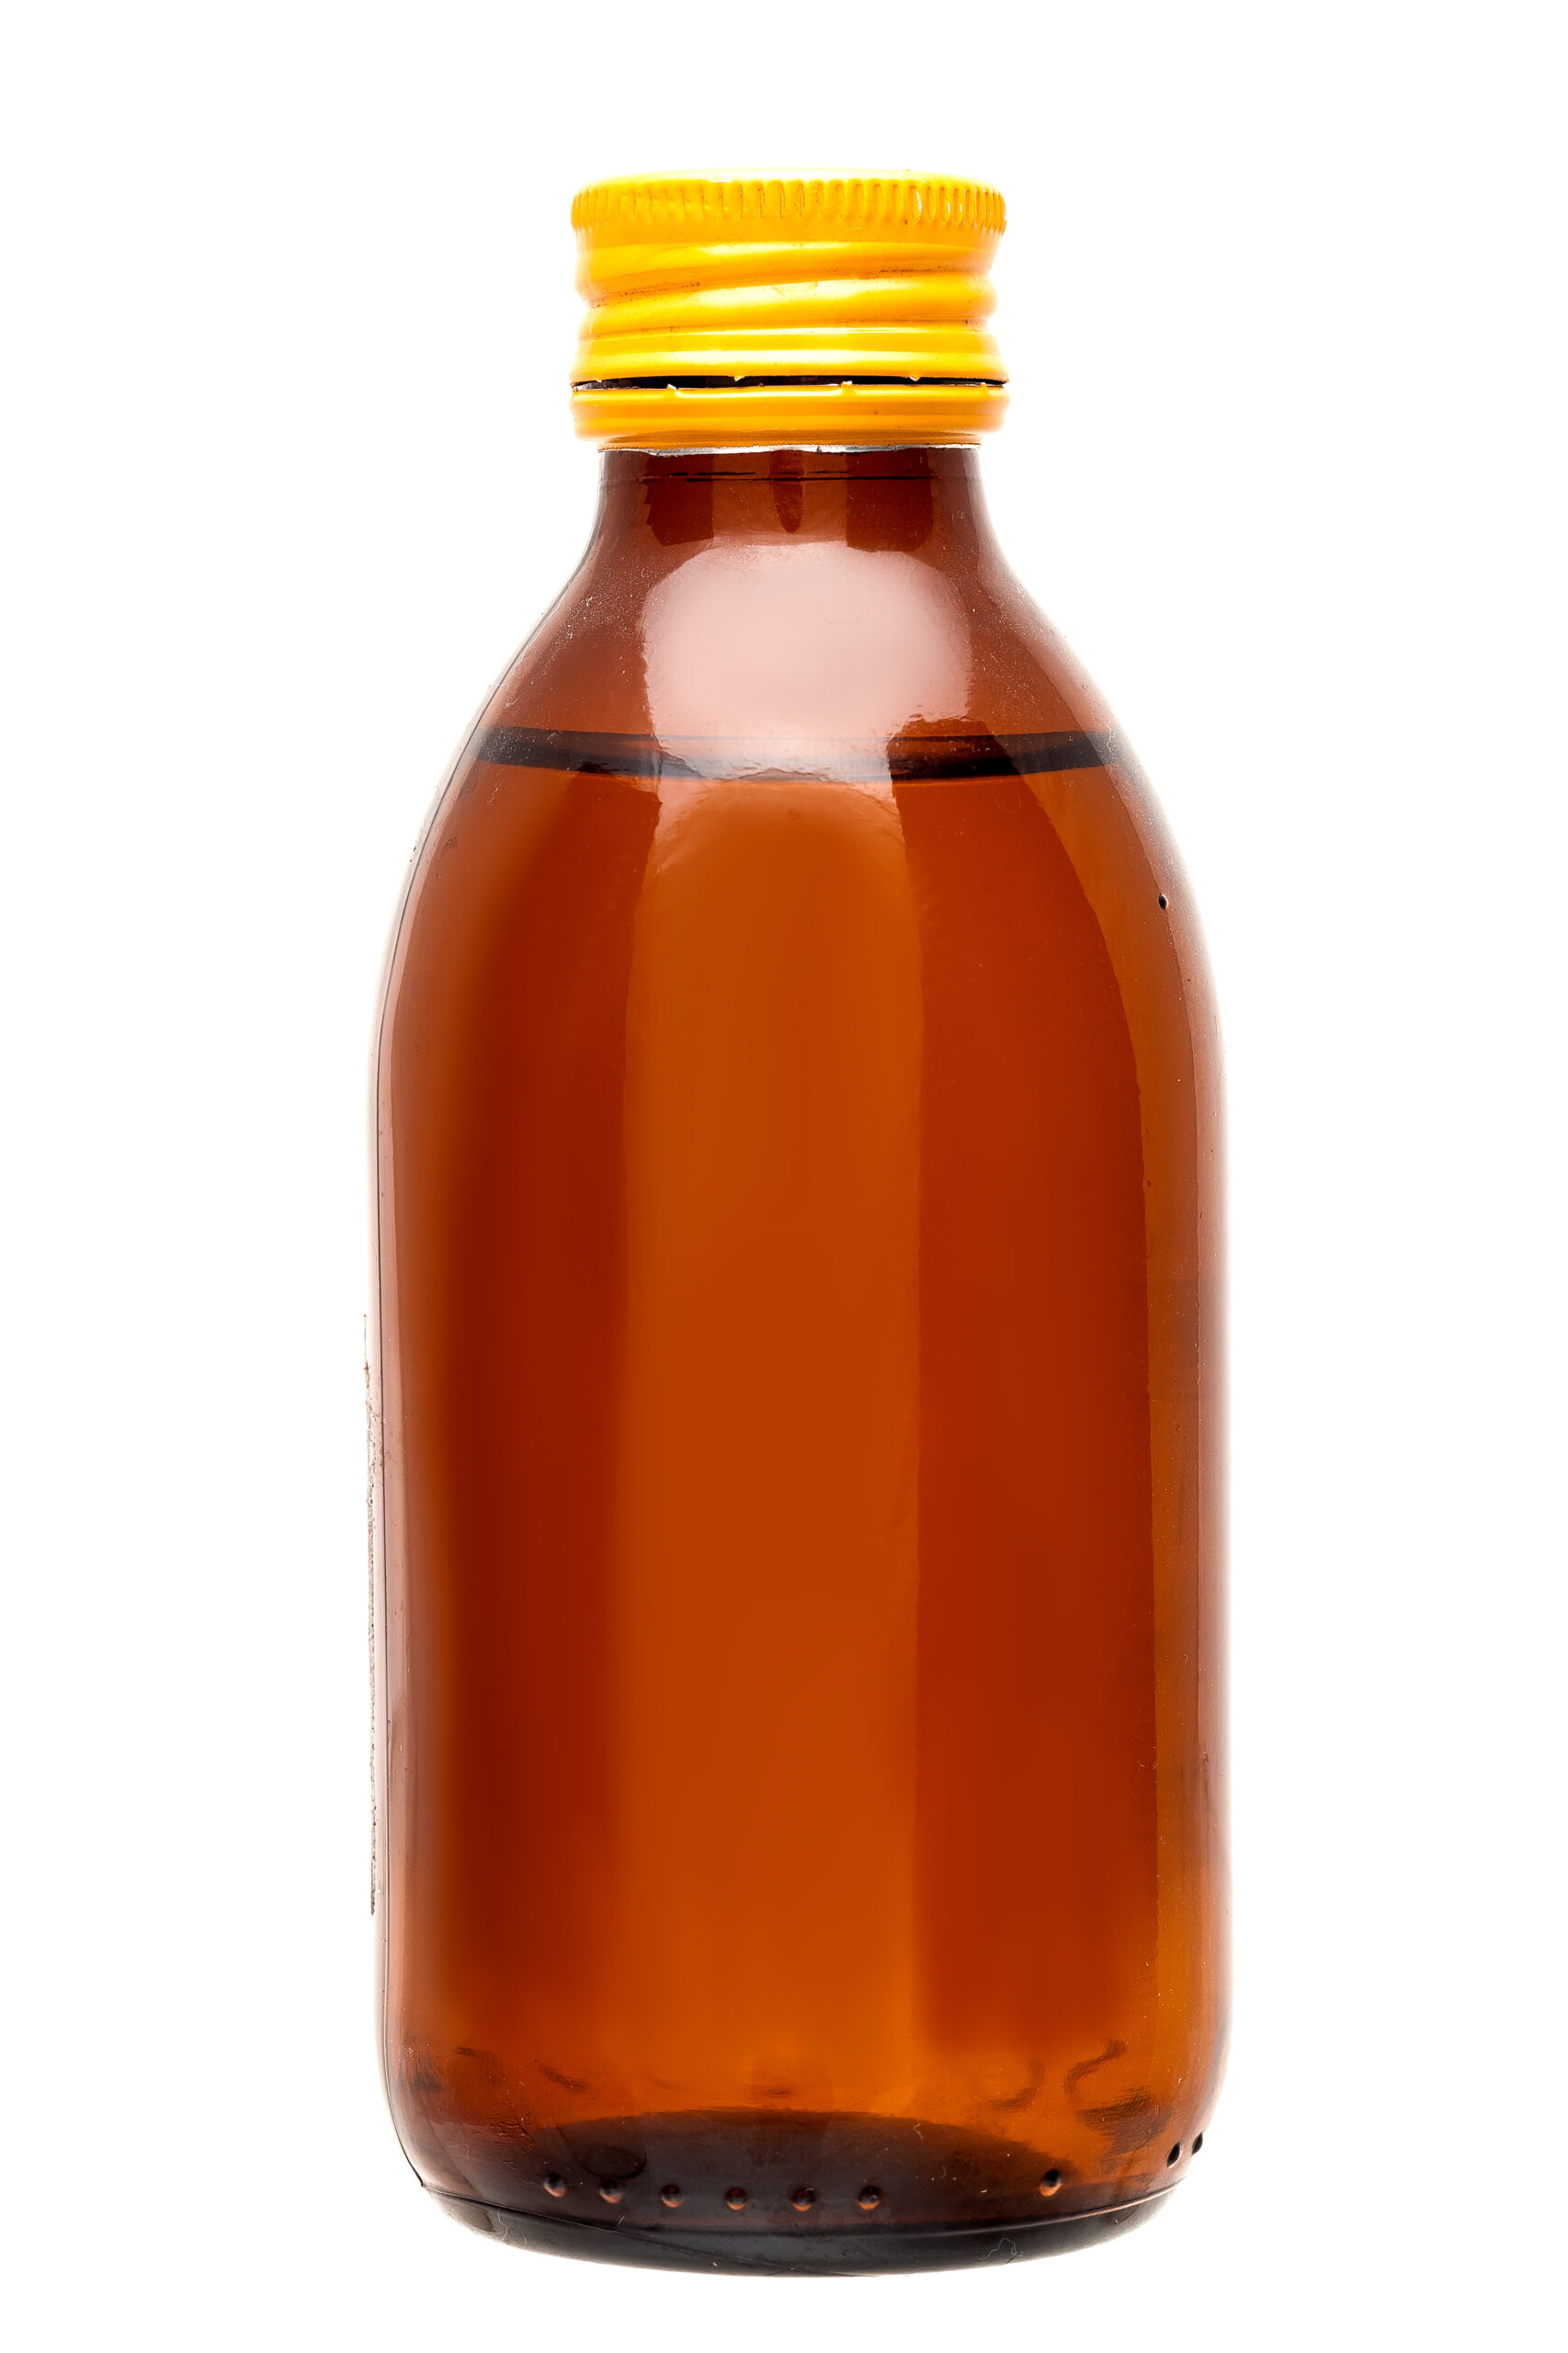 Syrop na kaszel w brązowej butelce szklanej z żółtą zakrętką, izolowany na białym tle.